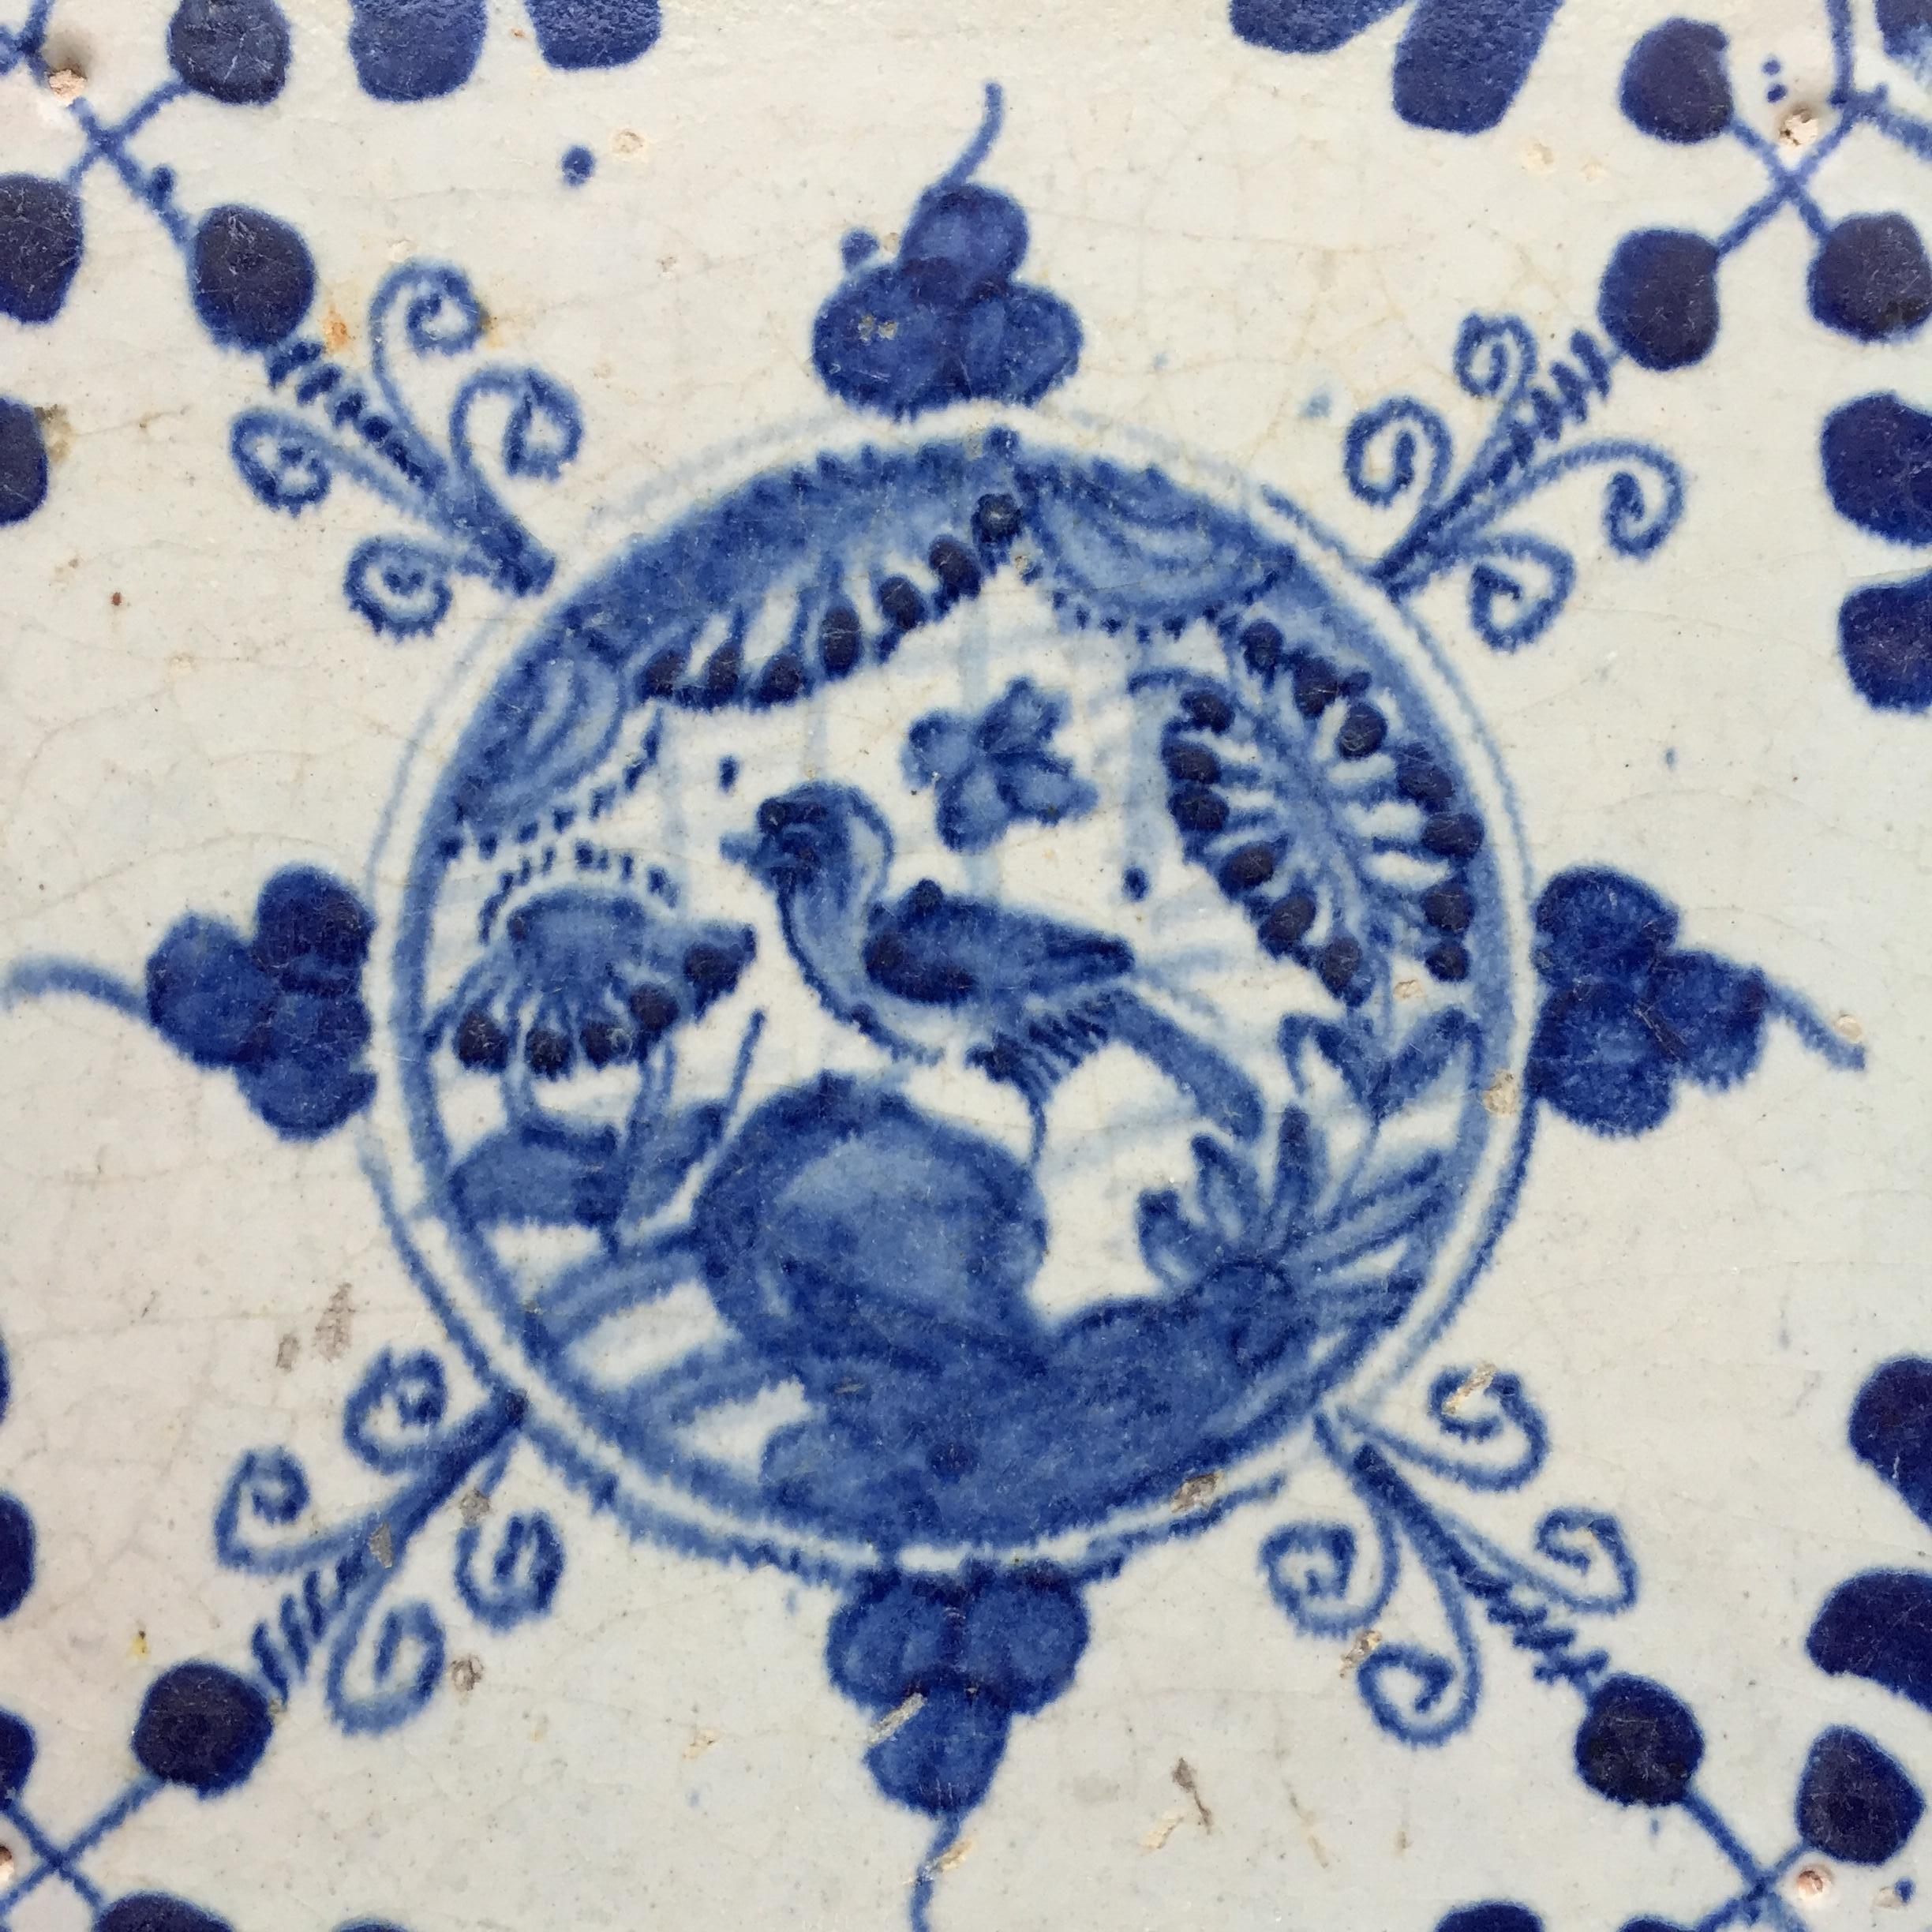 Die Niederlande
CIRCA 1620 - 1640

Eine blau-weiße holländische Fliese mit dem Dekor eines chinesischen Gartens mit einem Vogel auf einem Felsen. Beeinflusst durch das chinesische Porzellan der Wanli-Periode.
Gemalt in einem Kreis mit Blättern und